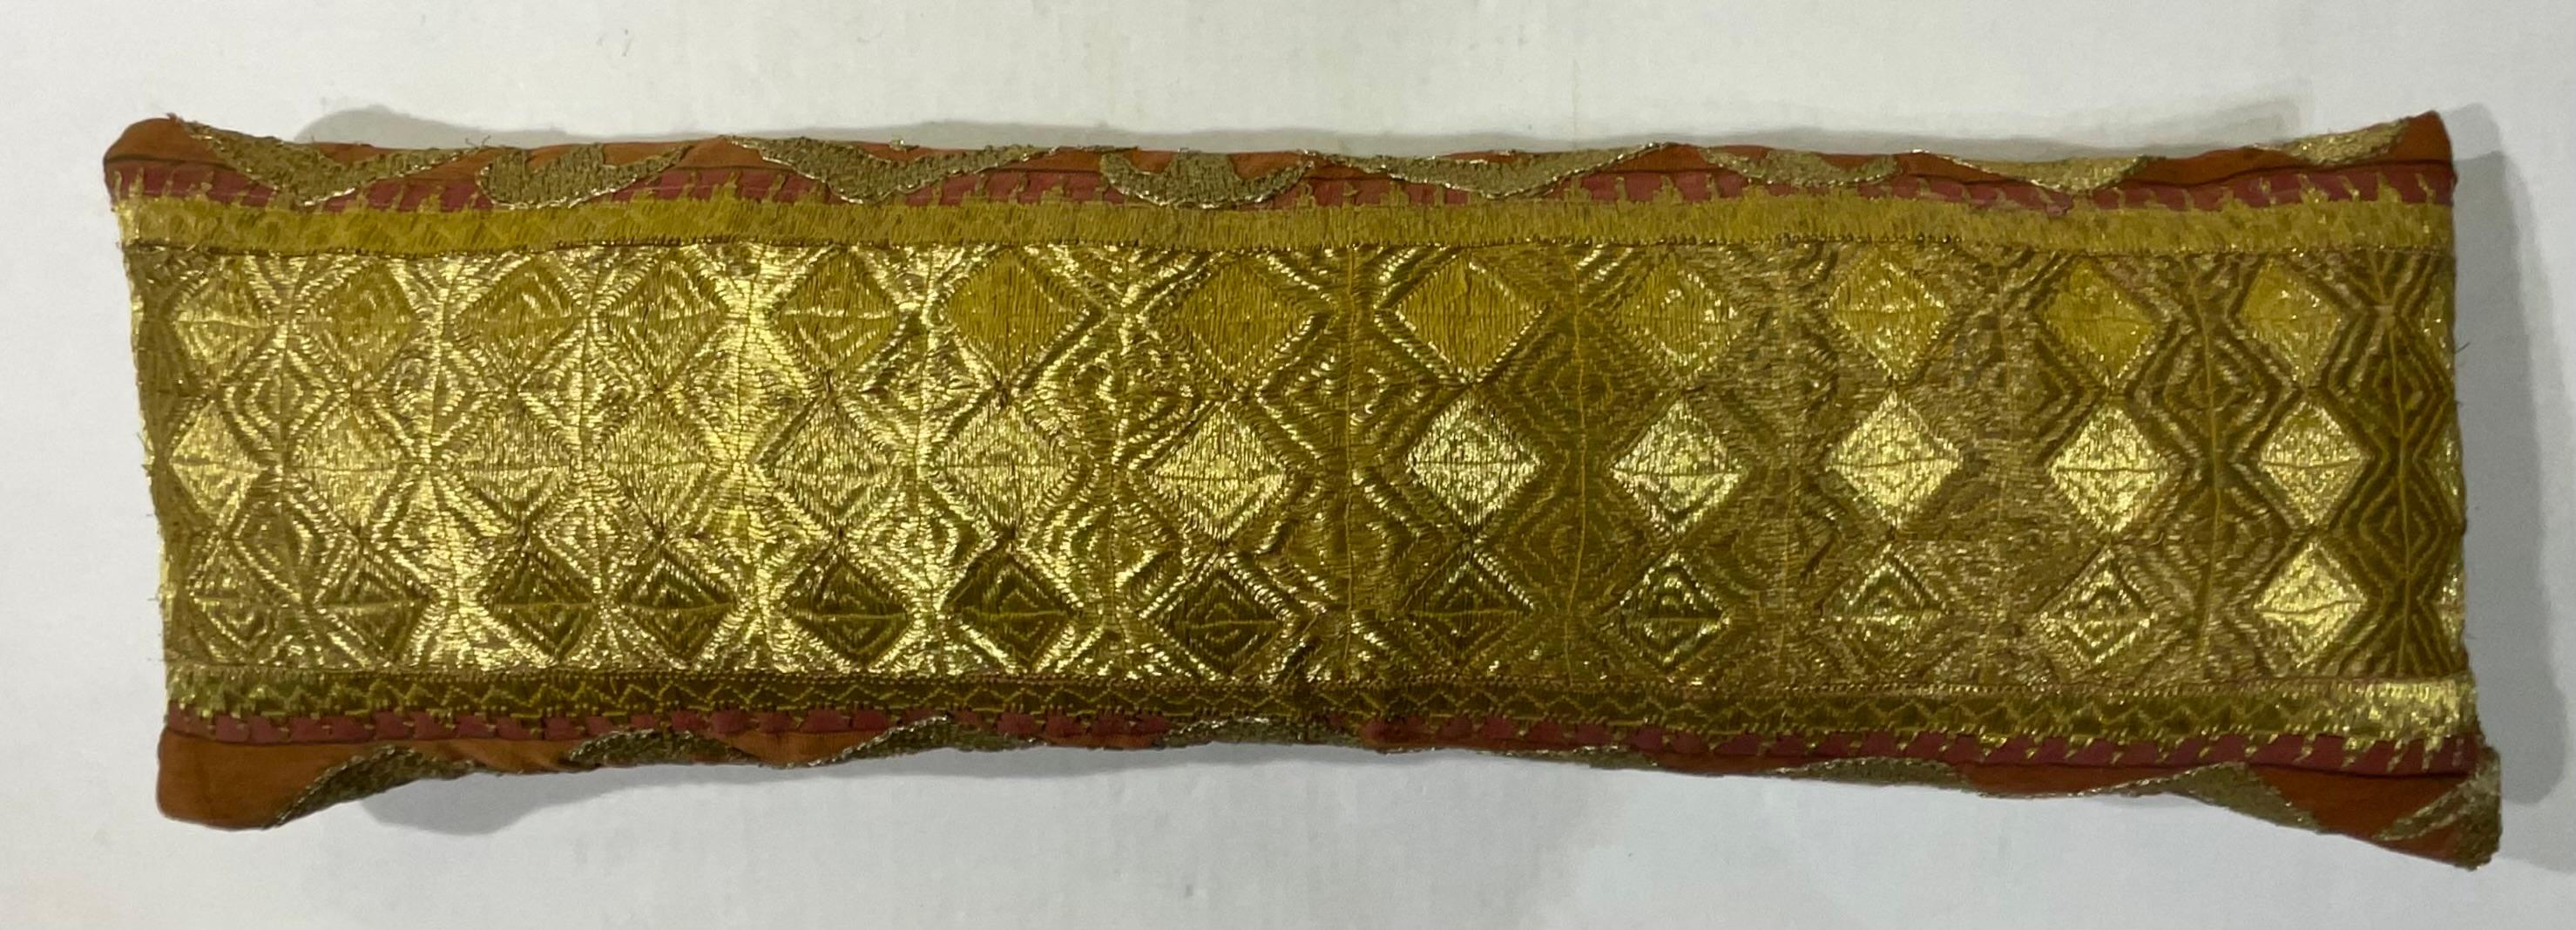 Exceptionnel oreiller en broderie de fils métalliques dorés sur fond de coton avec de magnifiques motifs géométriques artistiques. Support en coton fin. Récupéré d'un textile tribal antique plus grand.
